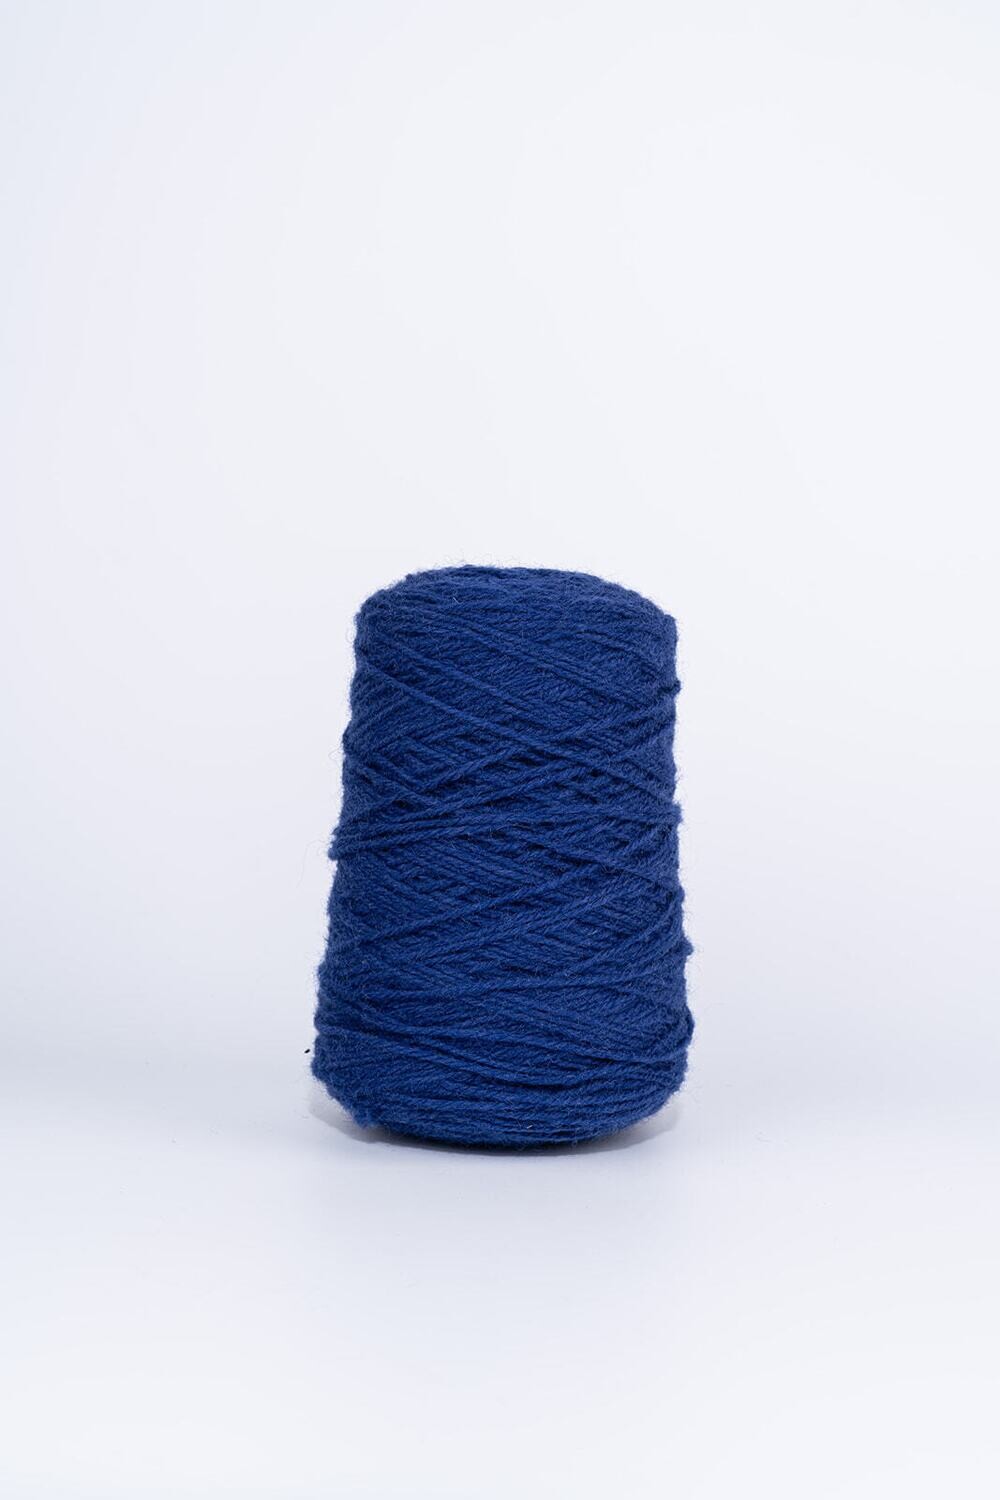 100% Wool Rug Yarn On Cones - Deep Space Blue